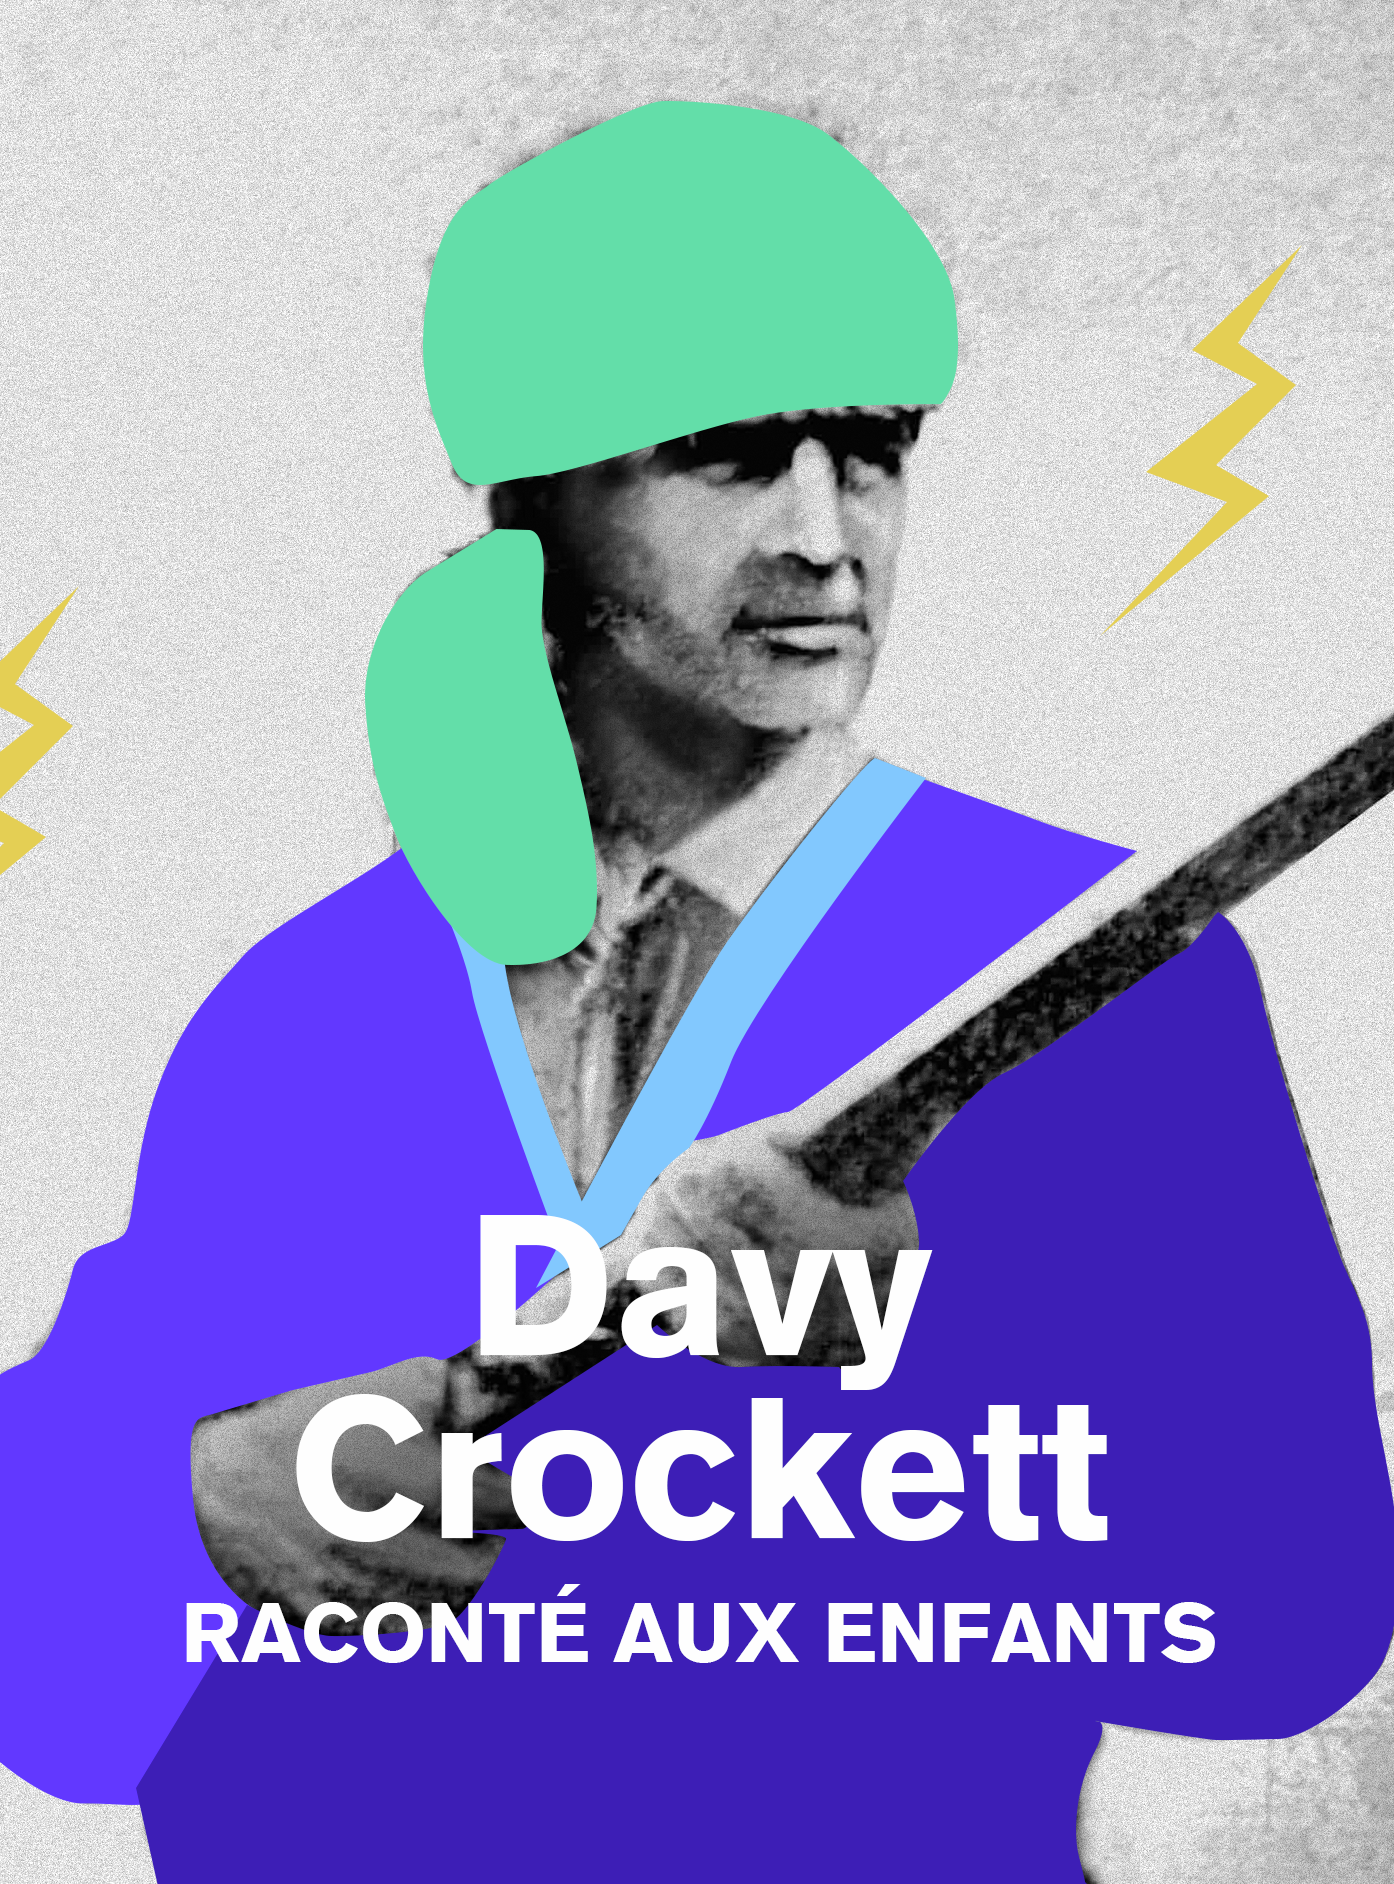 Davy Crockett, raconté aux enfants